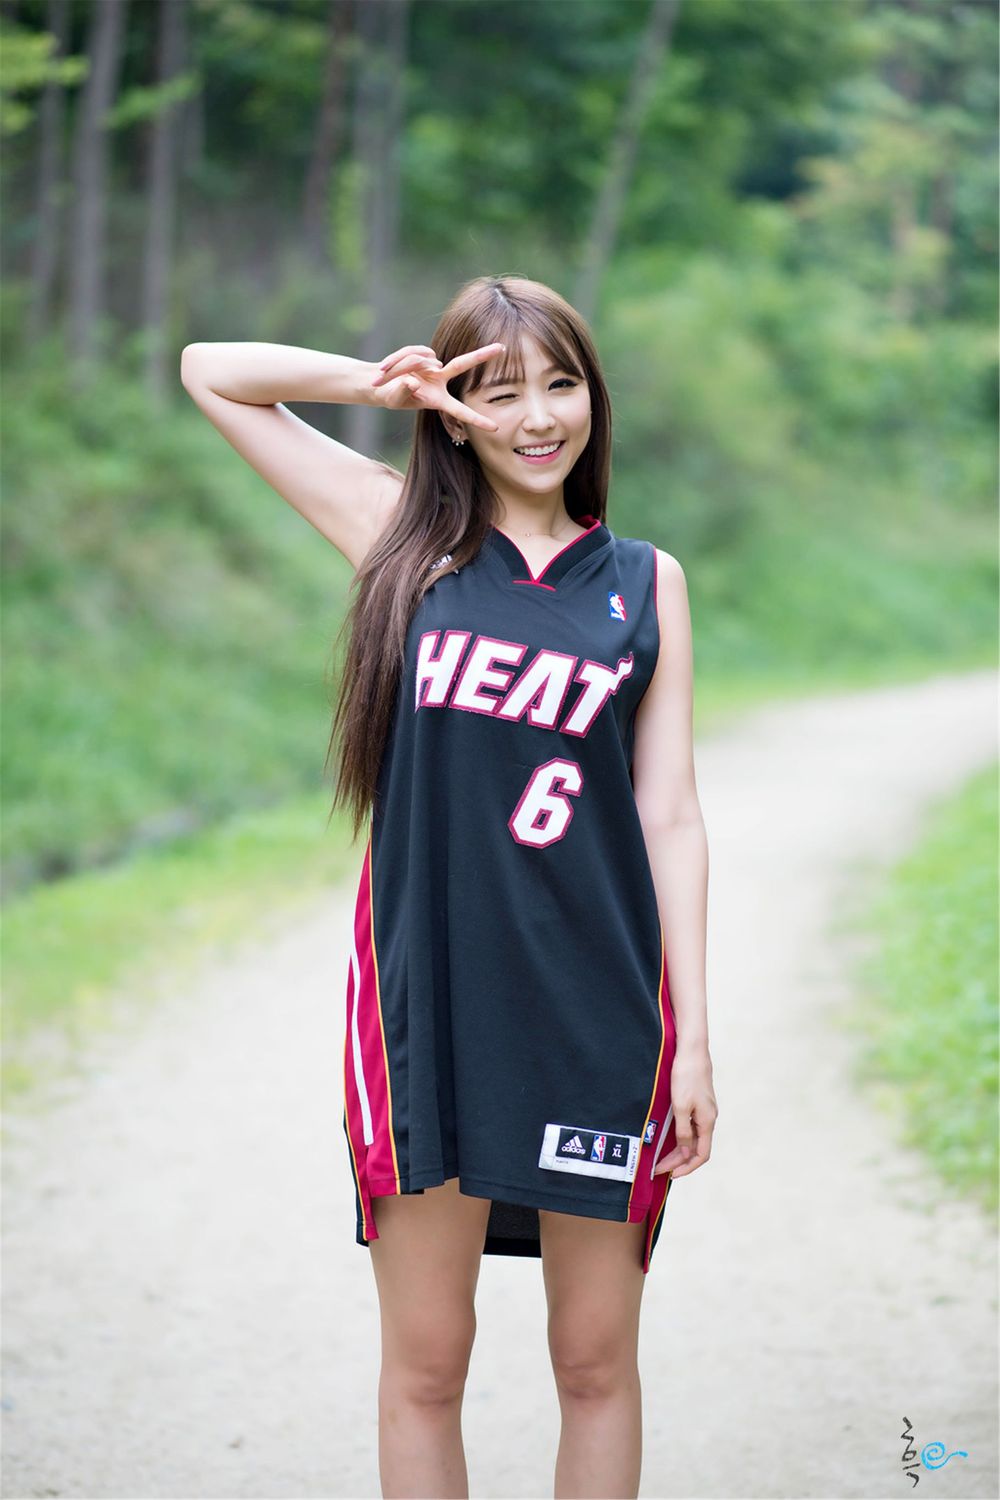 韩国网络李恩慧白与黑篮球宝贝装扮户外清纯写真